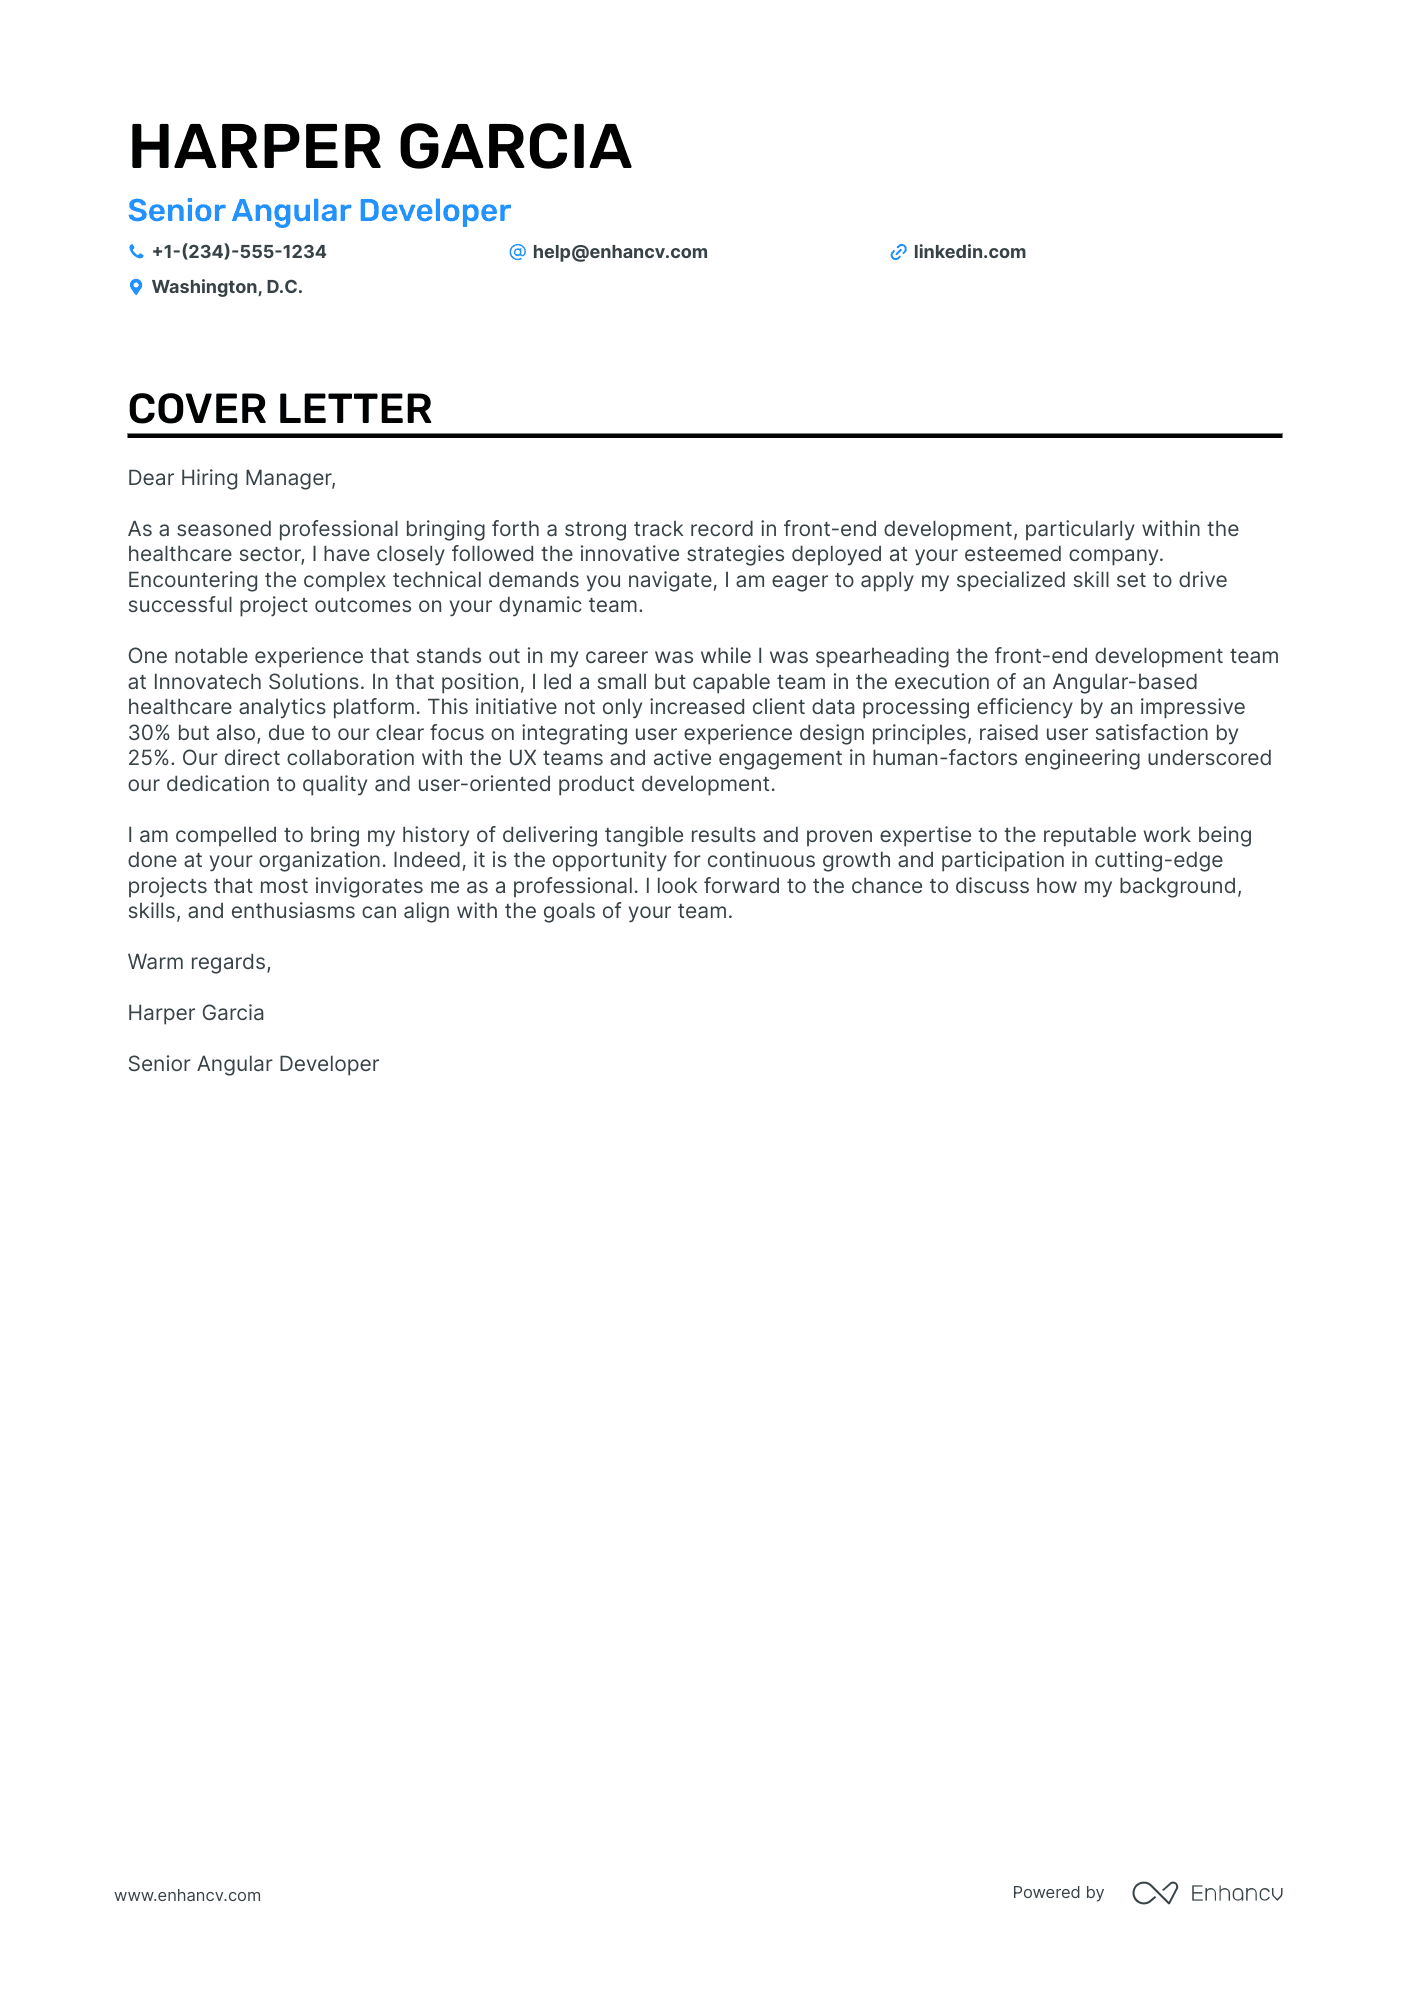 cover letter for web developer trainee